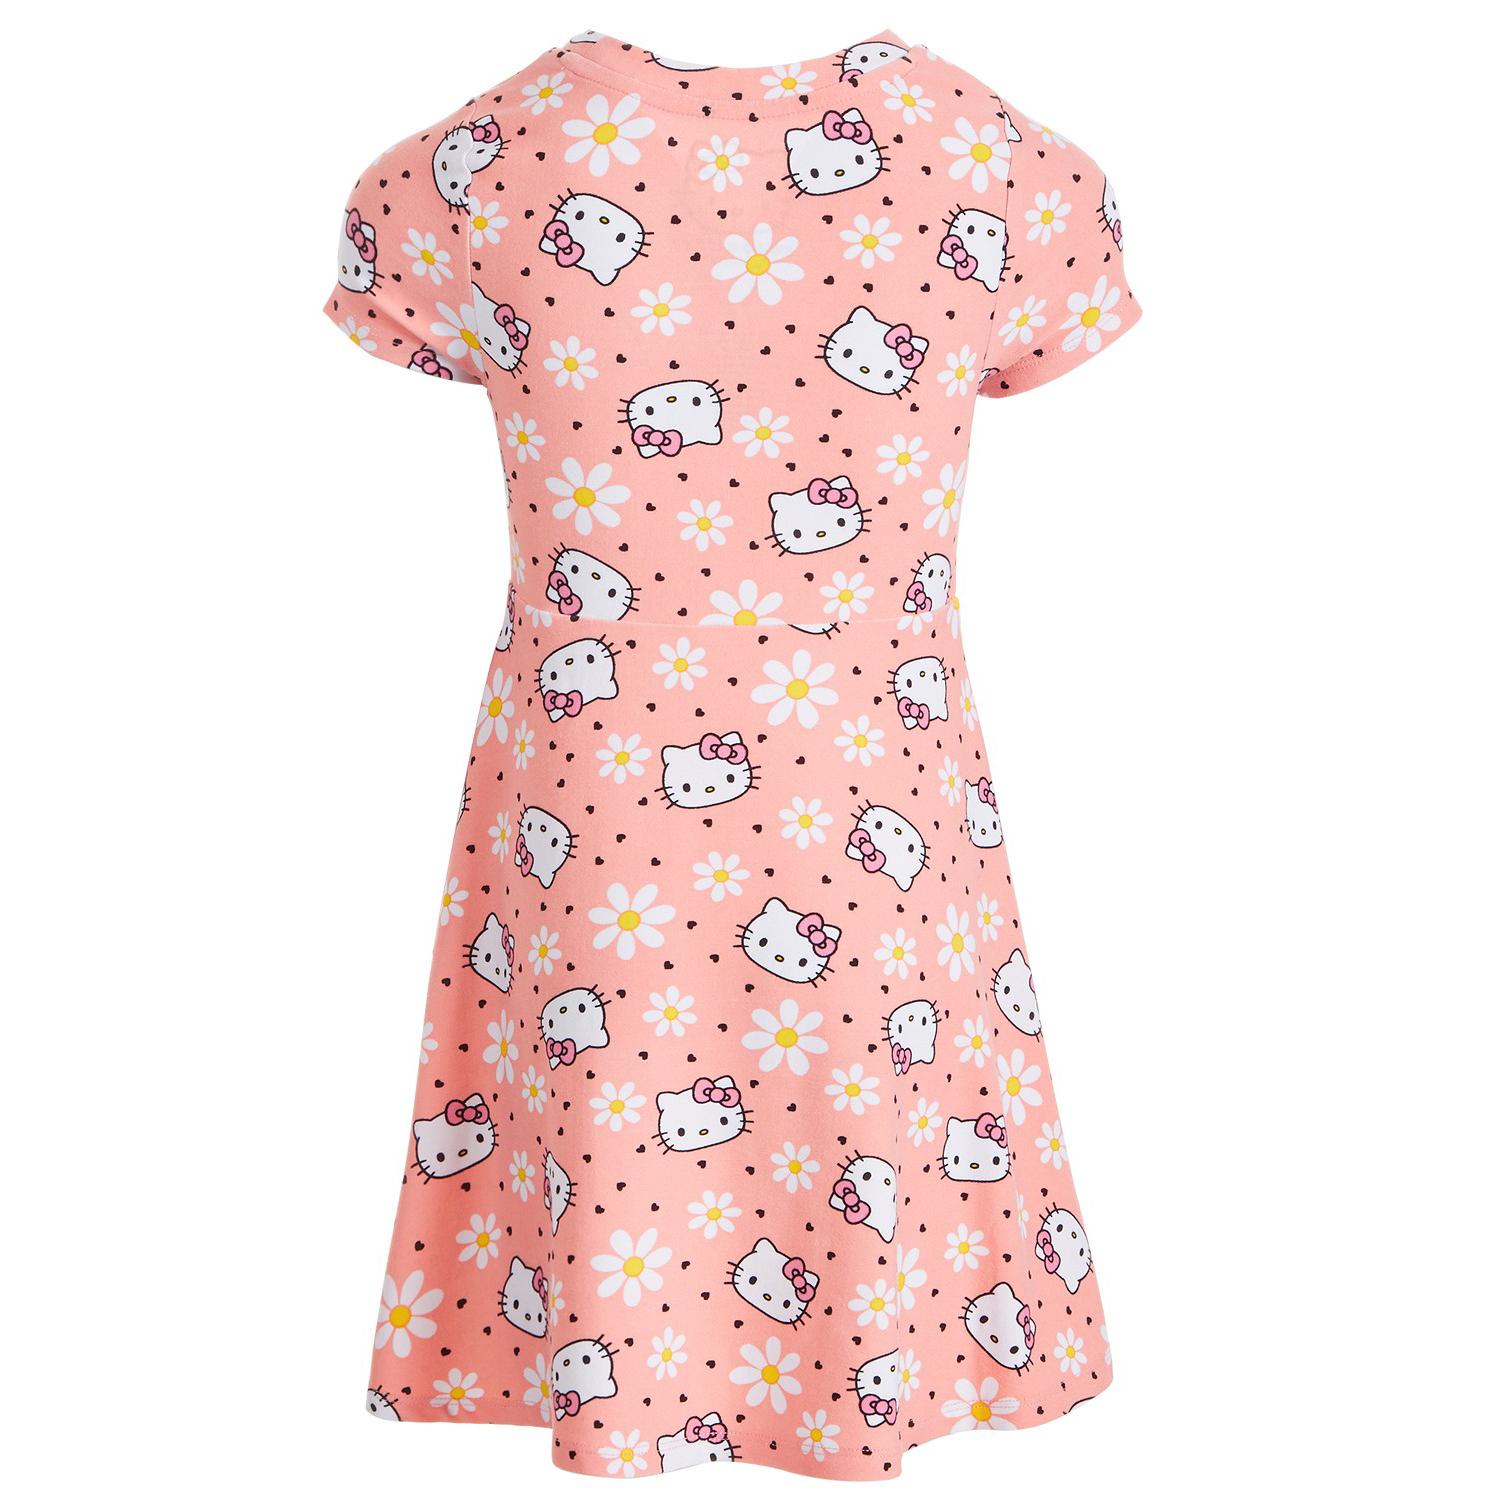 Hello Kitty Little Girls Flower Dress for $9.80